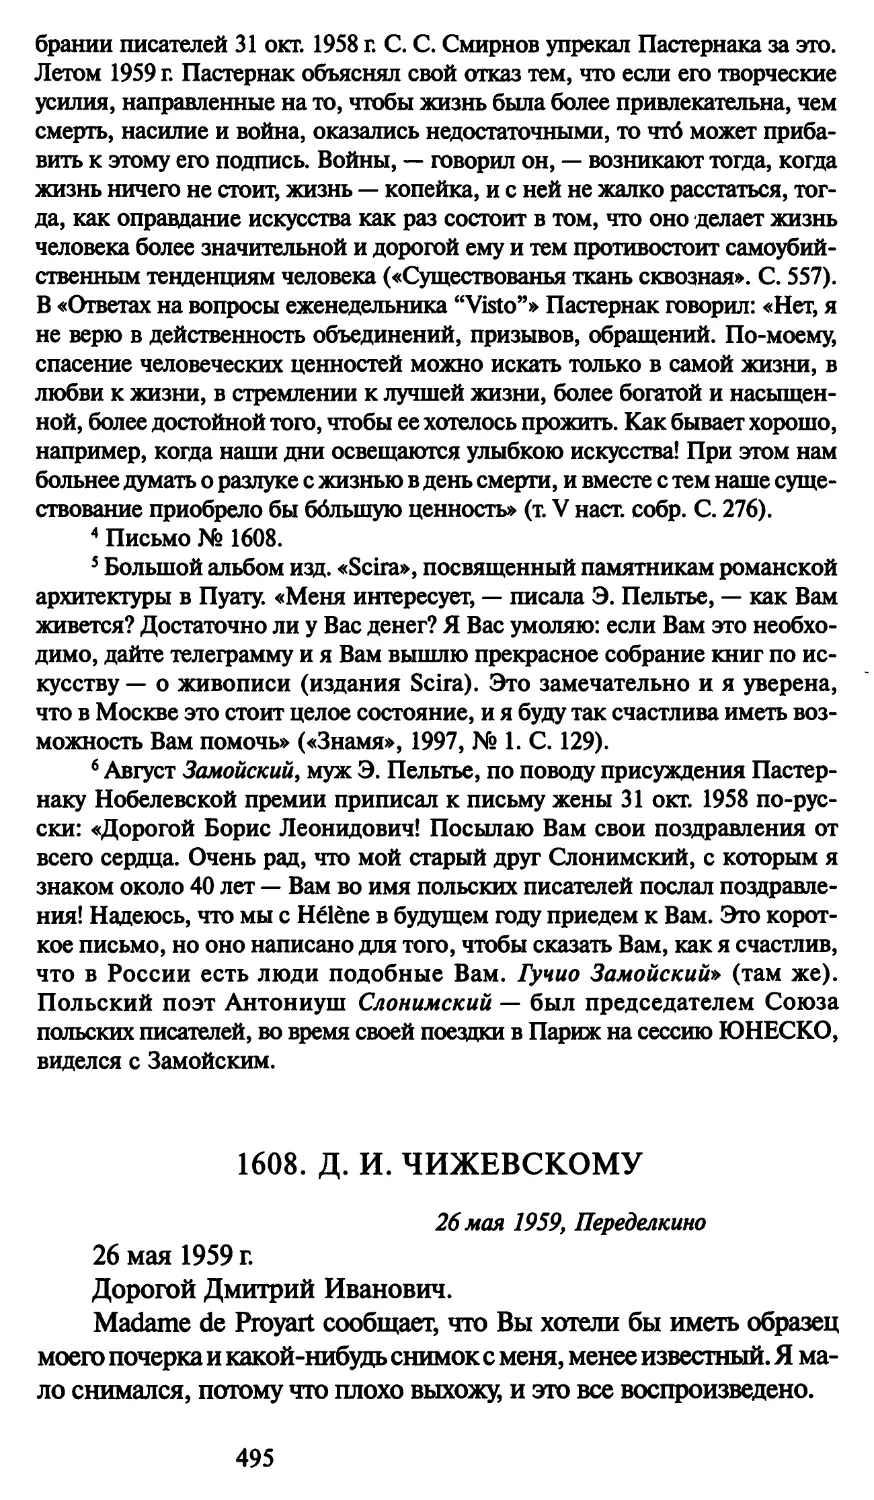 1608. Д. И. Чижевскому 26 мая 1959